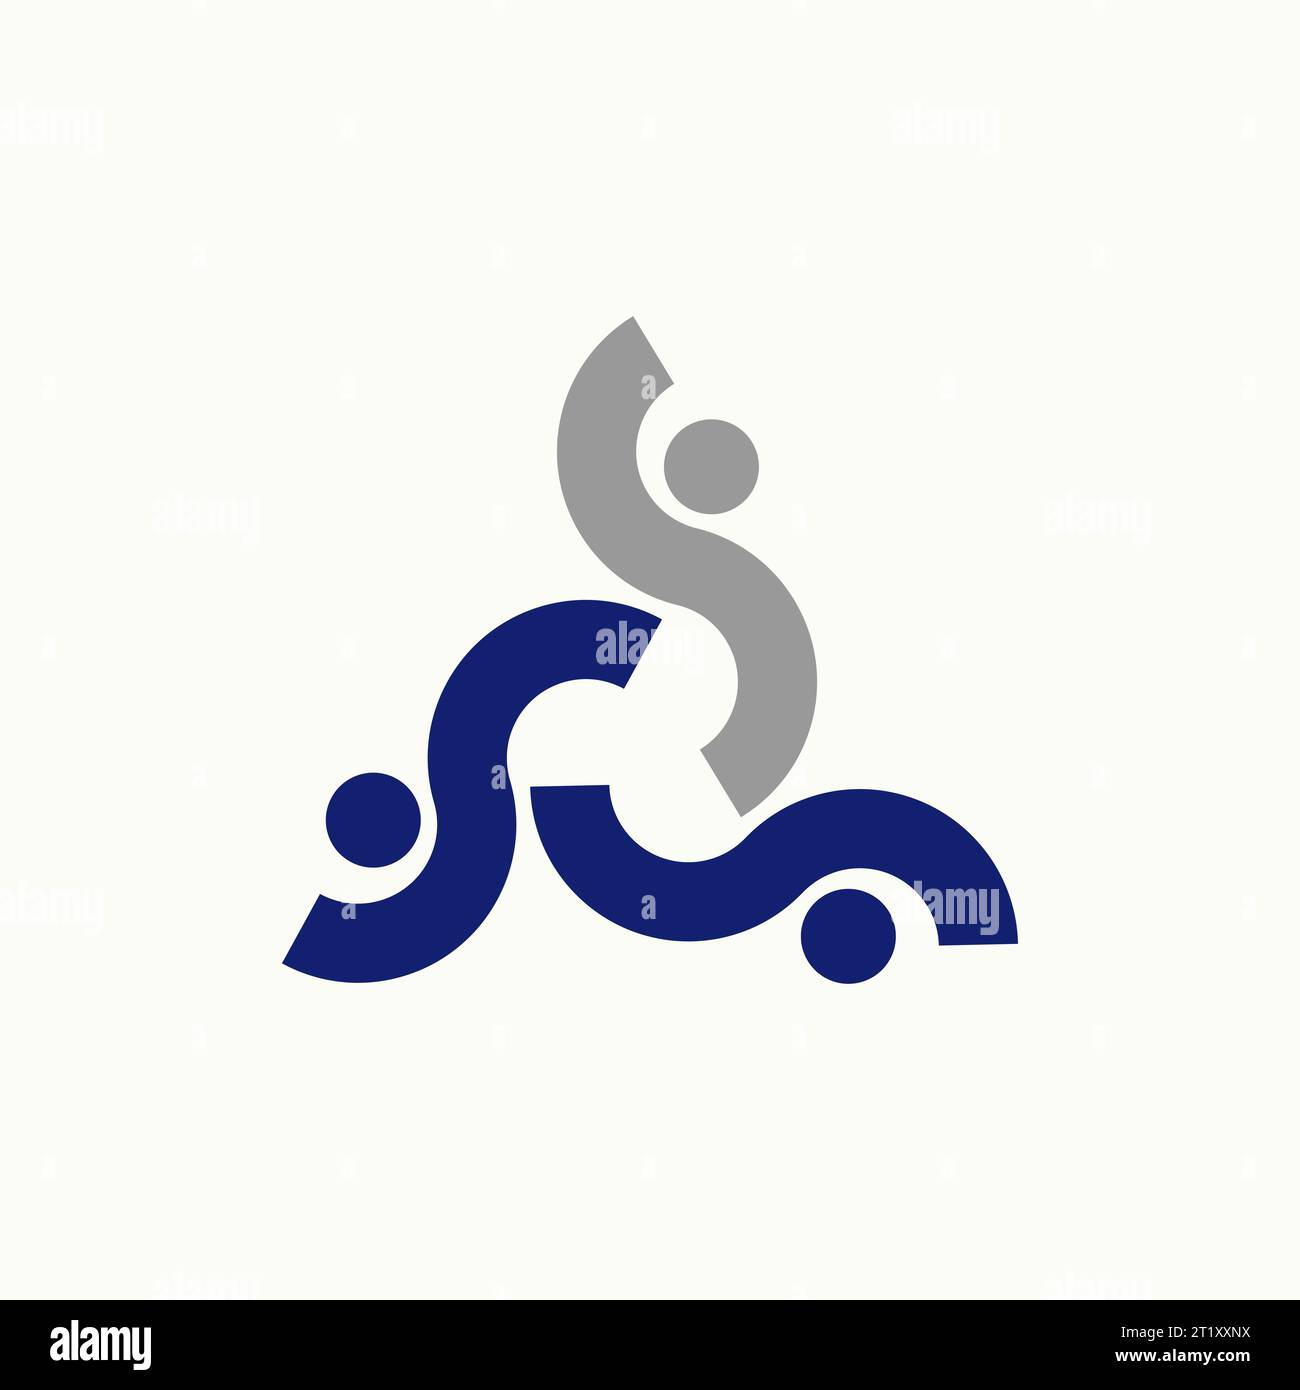 Logo design concetto grafico astratto creativo stock vettoriale premium sign 3 font iniziale S come motivo umano attivo felice relativo alla comunità monogramma Illustrazione Vettoriale